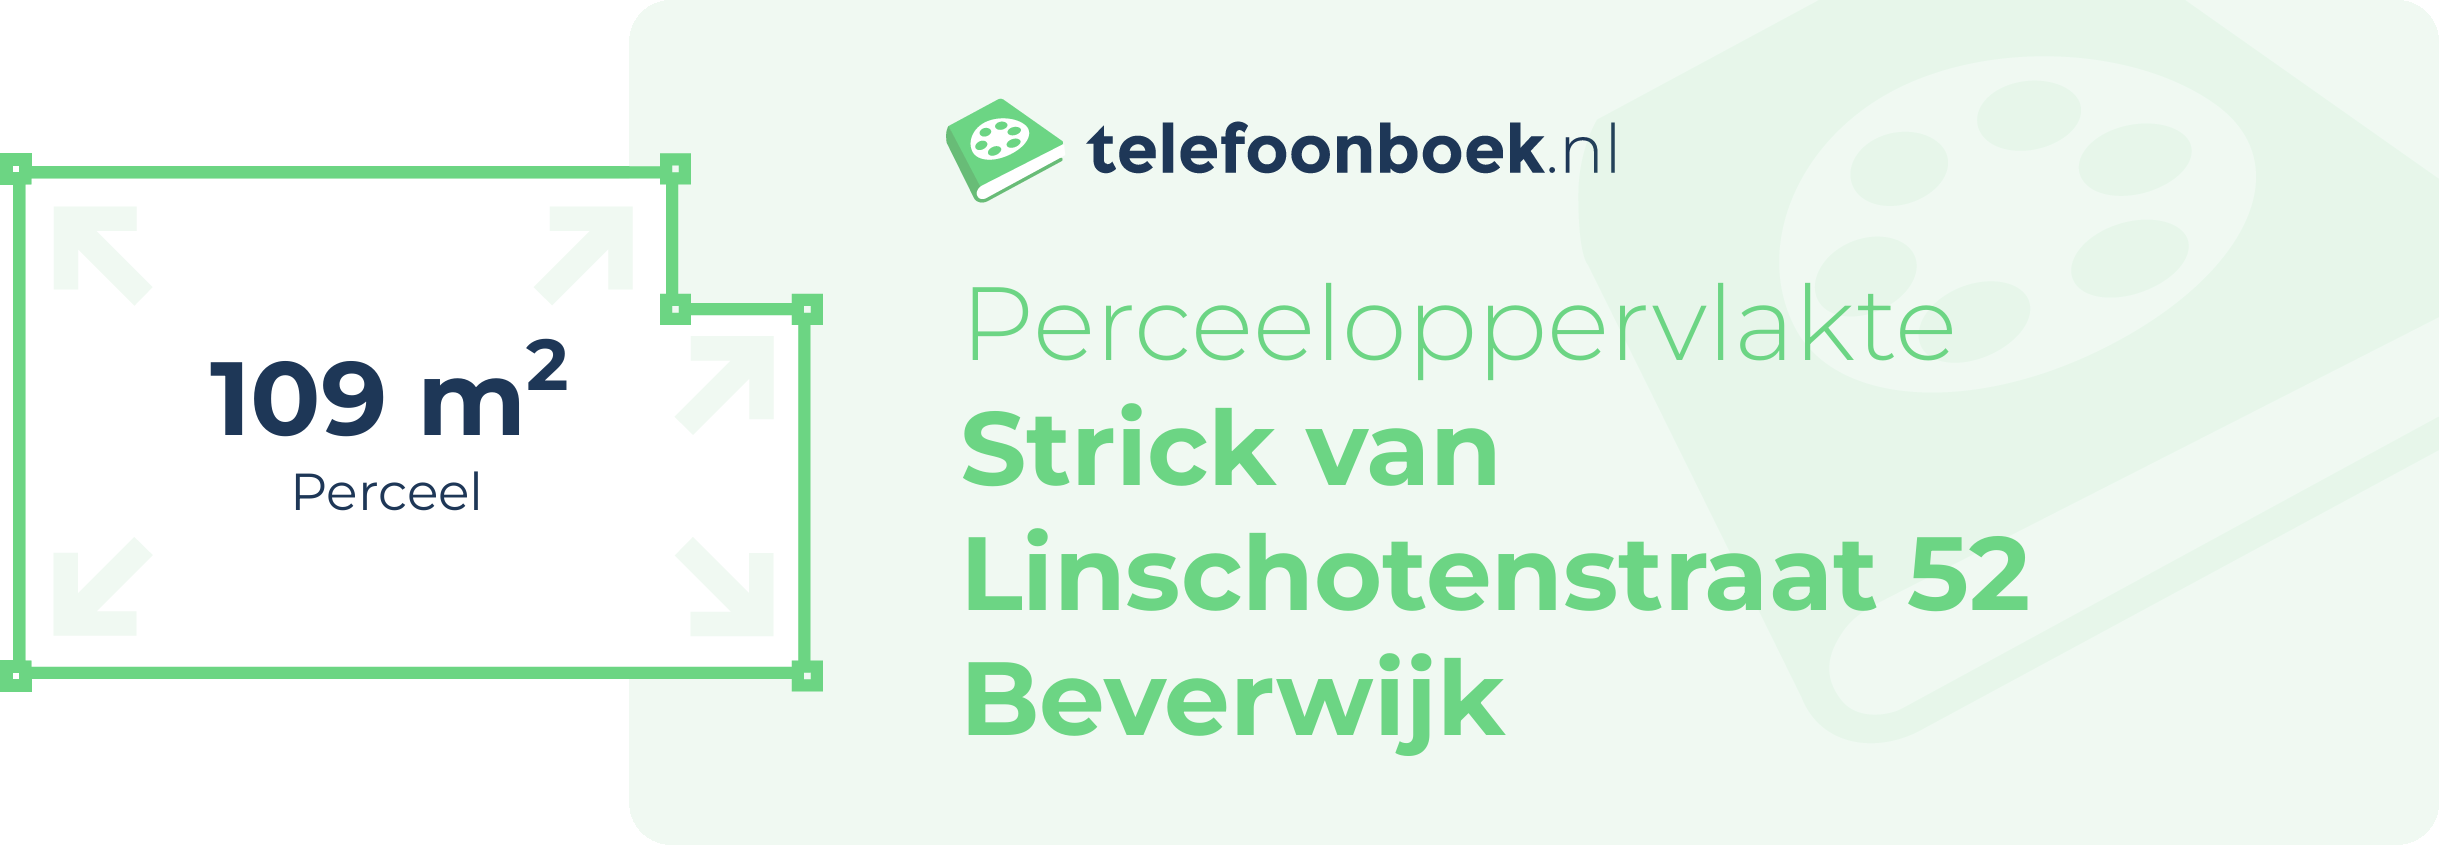 Perceeloppervlakte Strick Van Linschotenstraat 52 Beverwijk